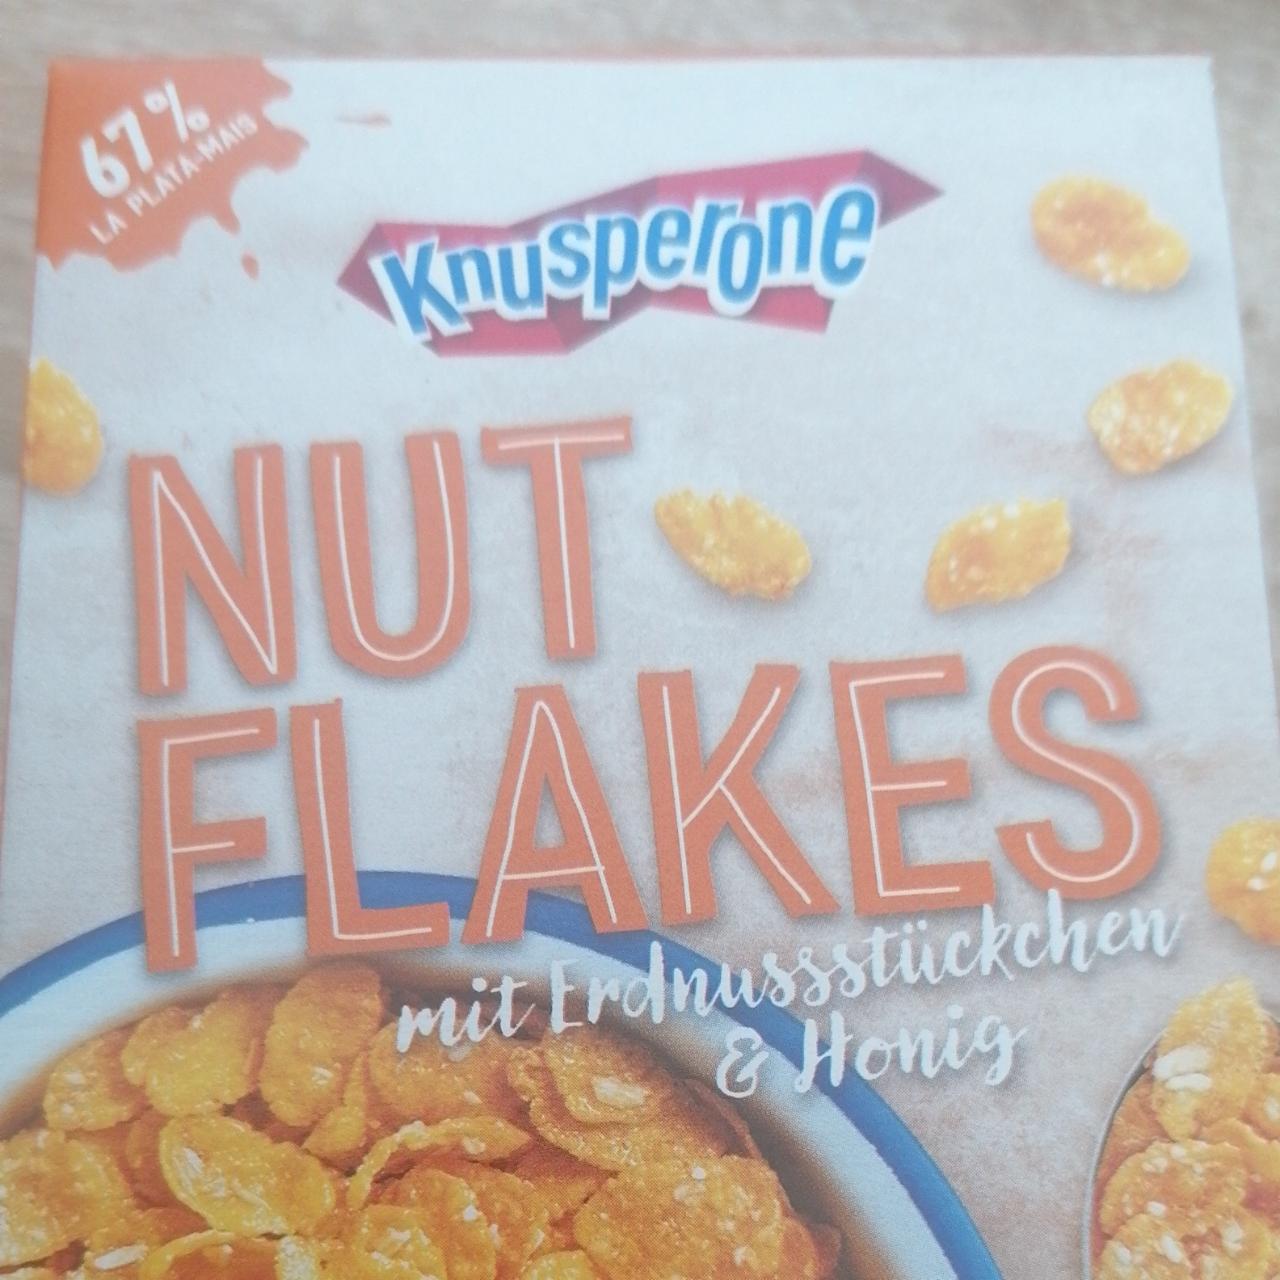 Fotografie - Nut Flakes mit Erdnussstückchen & Honig Knusperone